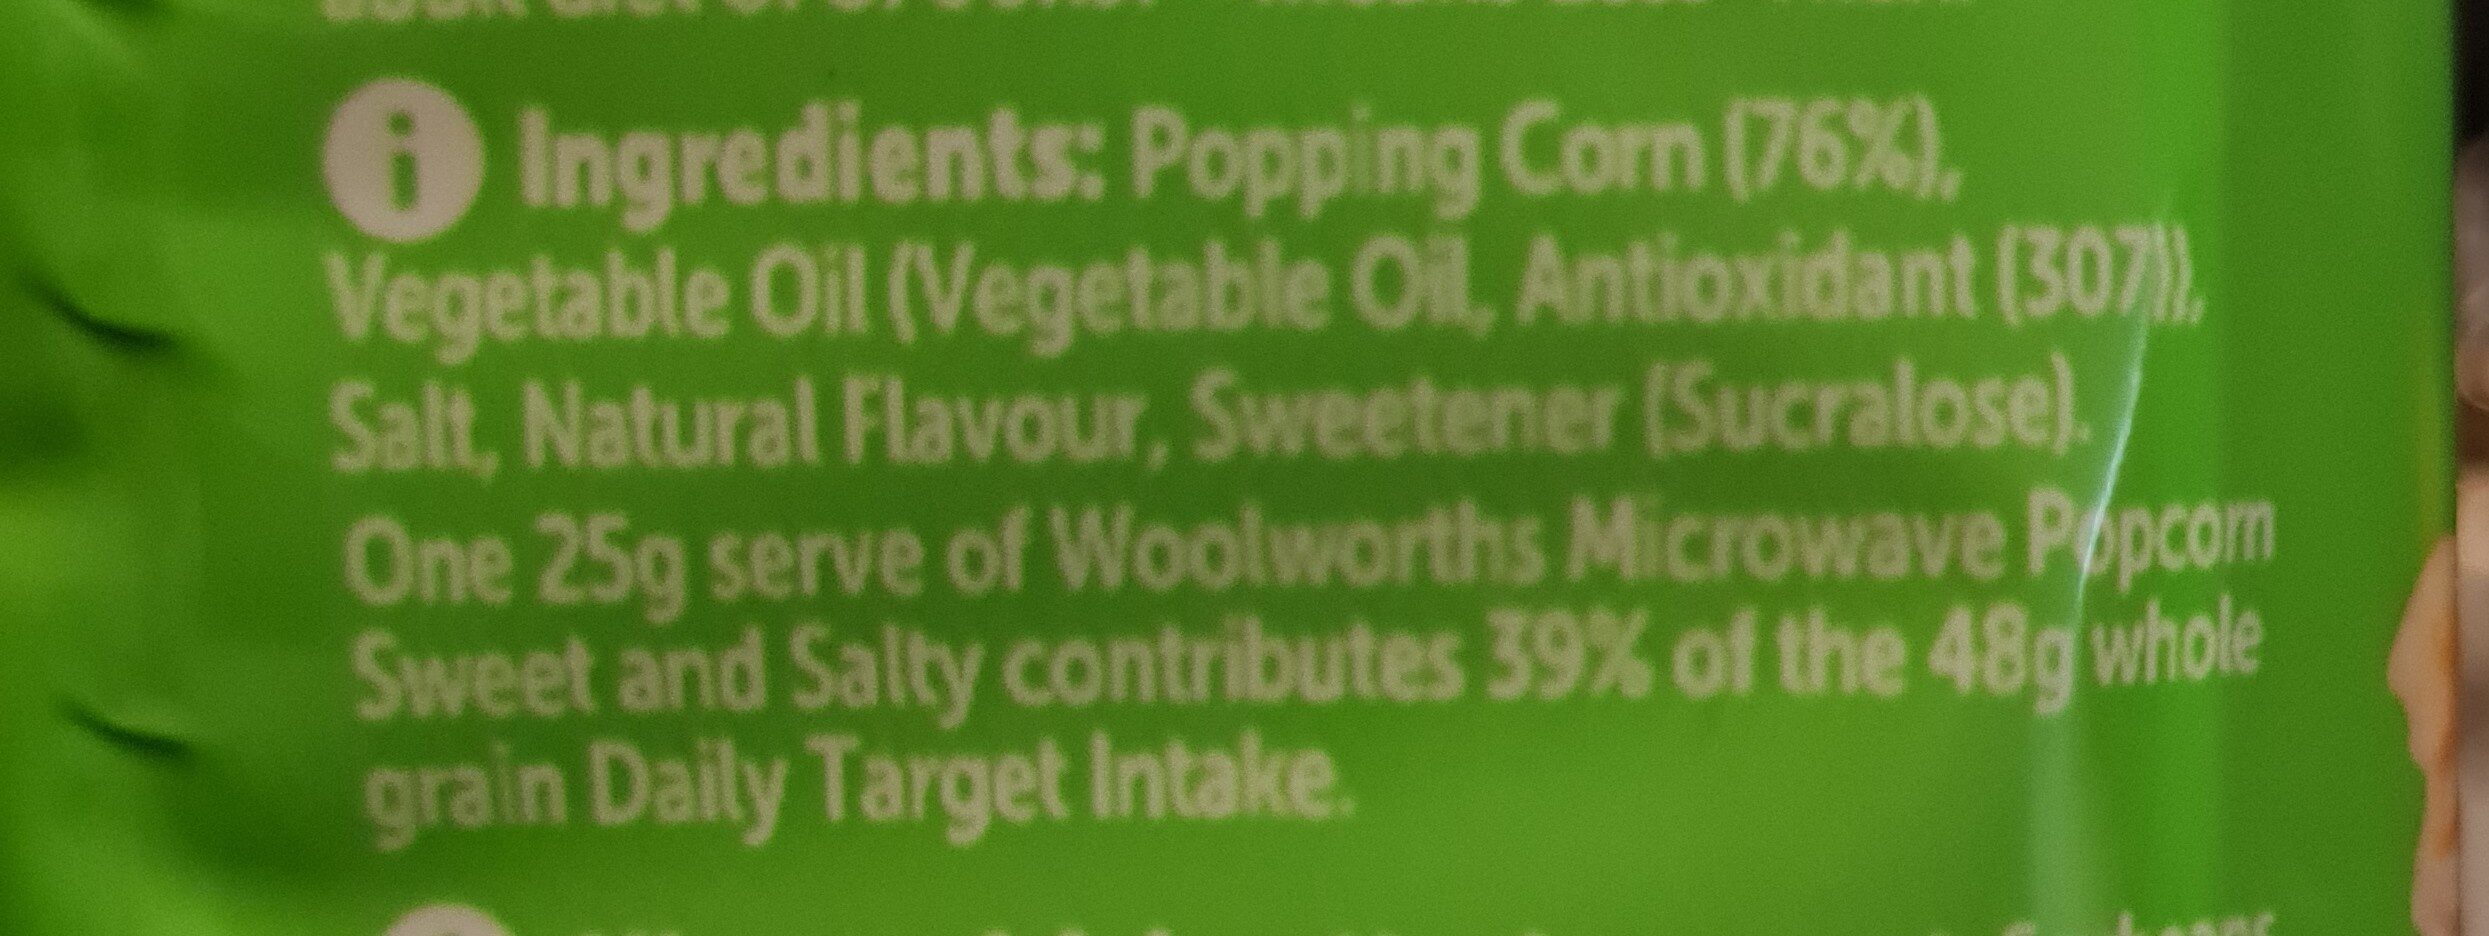 Sweet & Salty Popcorn - Ingredients